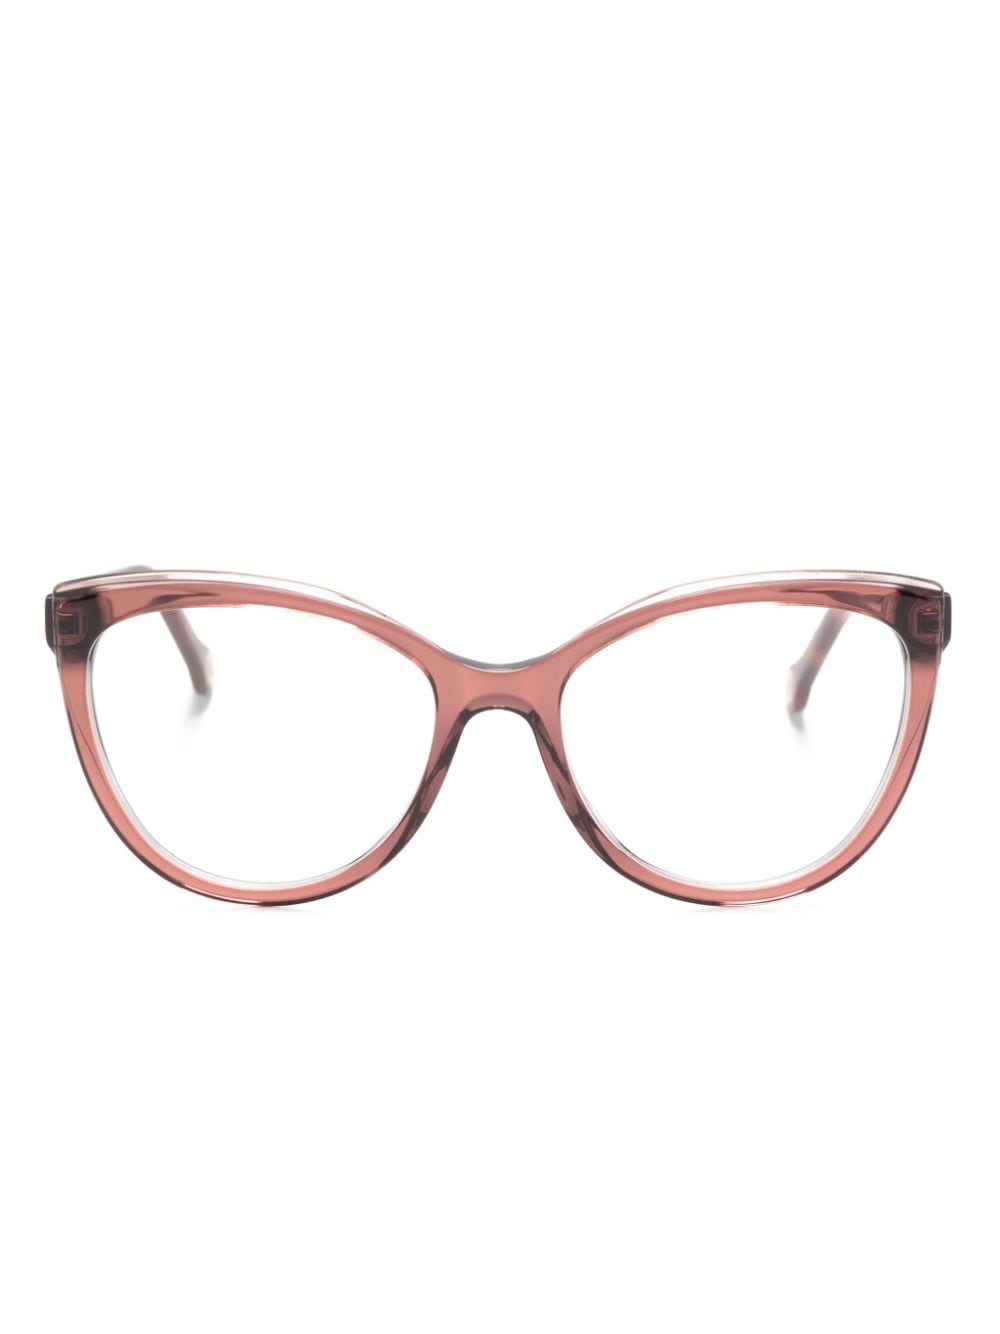 Carolina Herrera Cat-eye Glasses In Pink